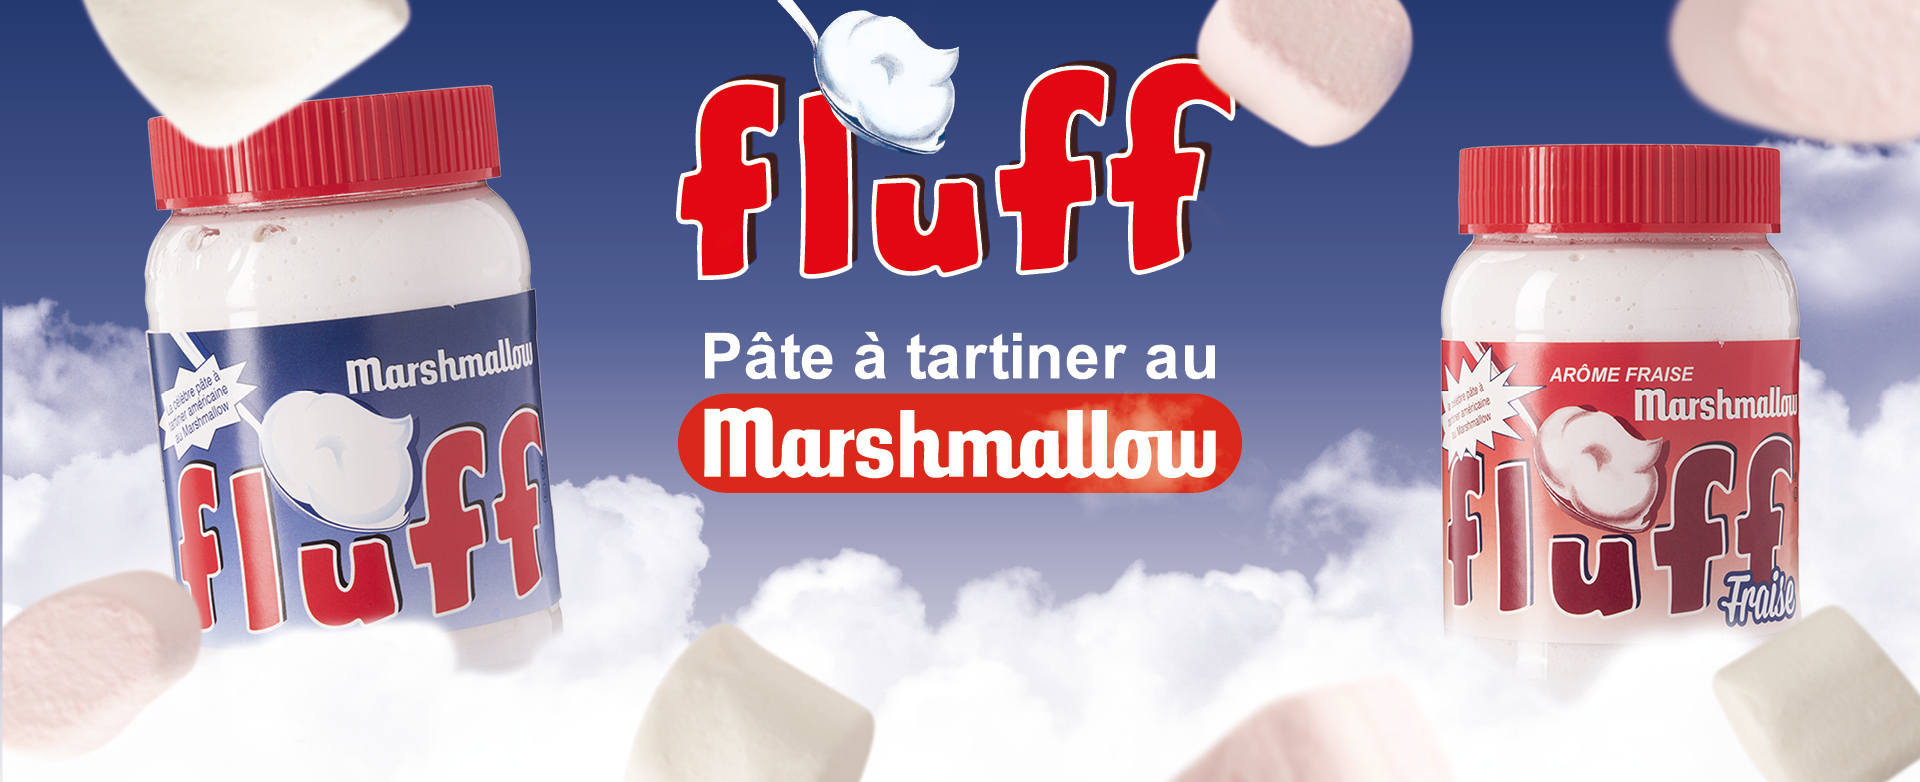 Marshmallow Fluff - SDV Les Marchés du Monde